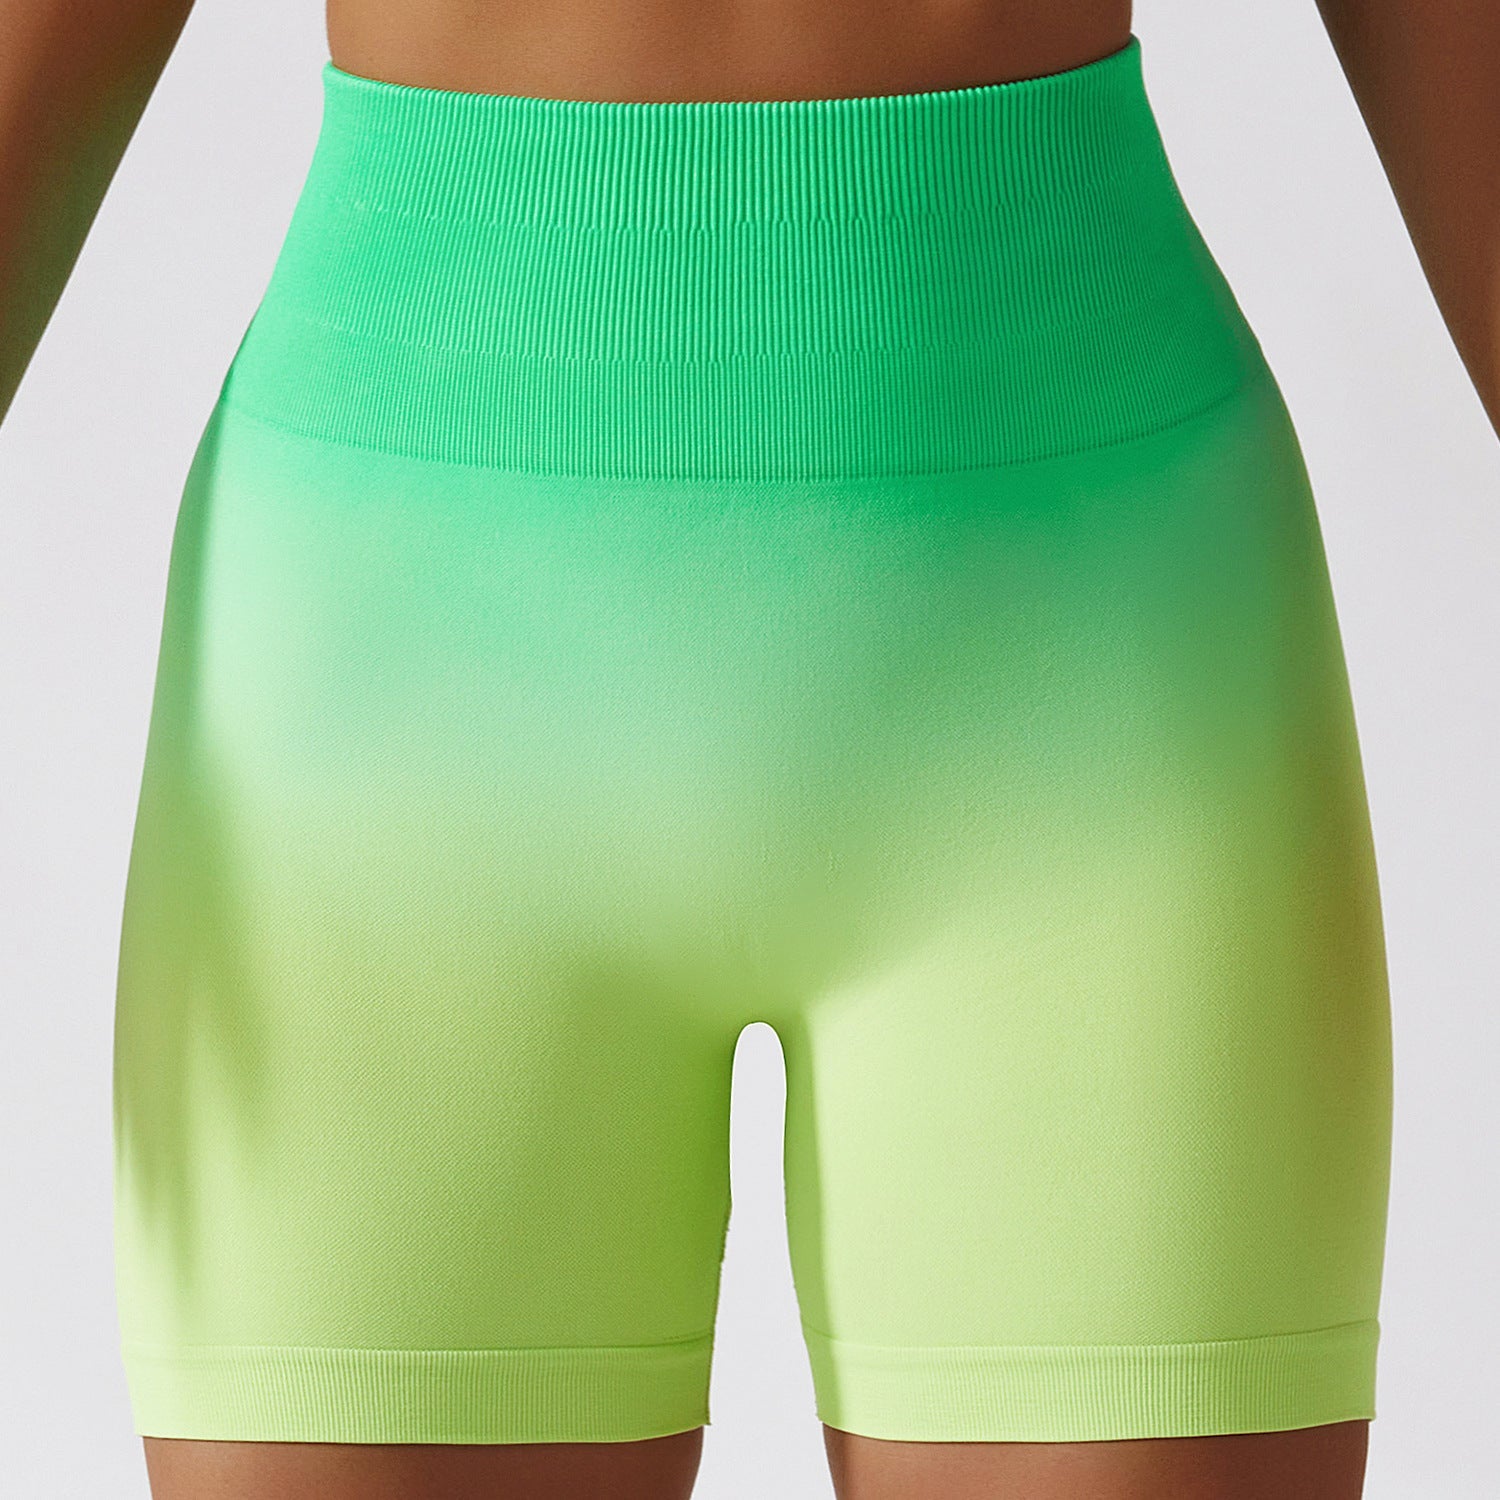 Wholesale Seamless Gym Yoga Shorts